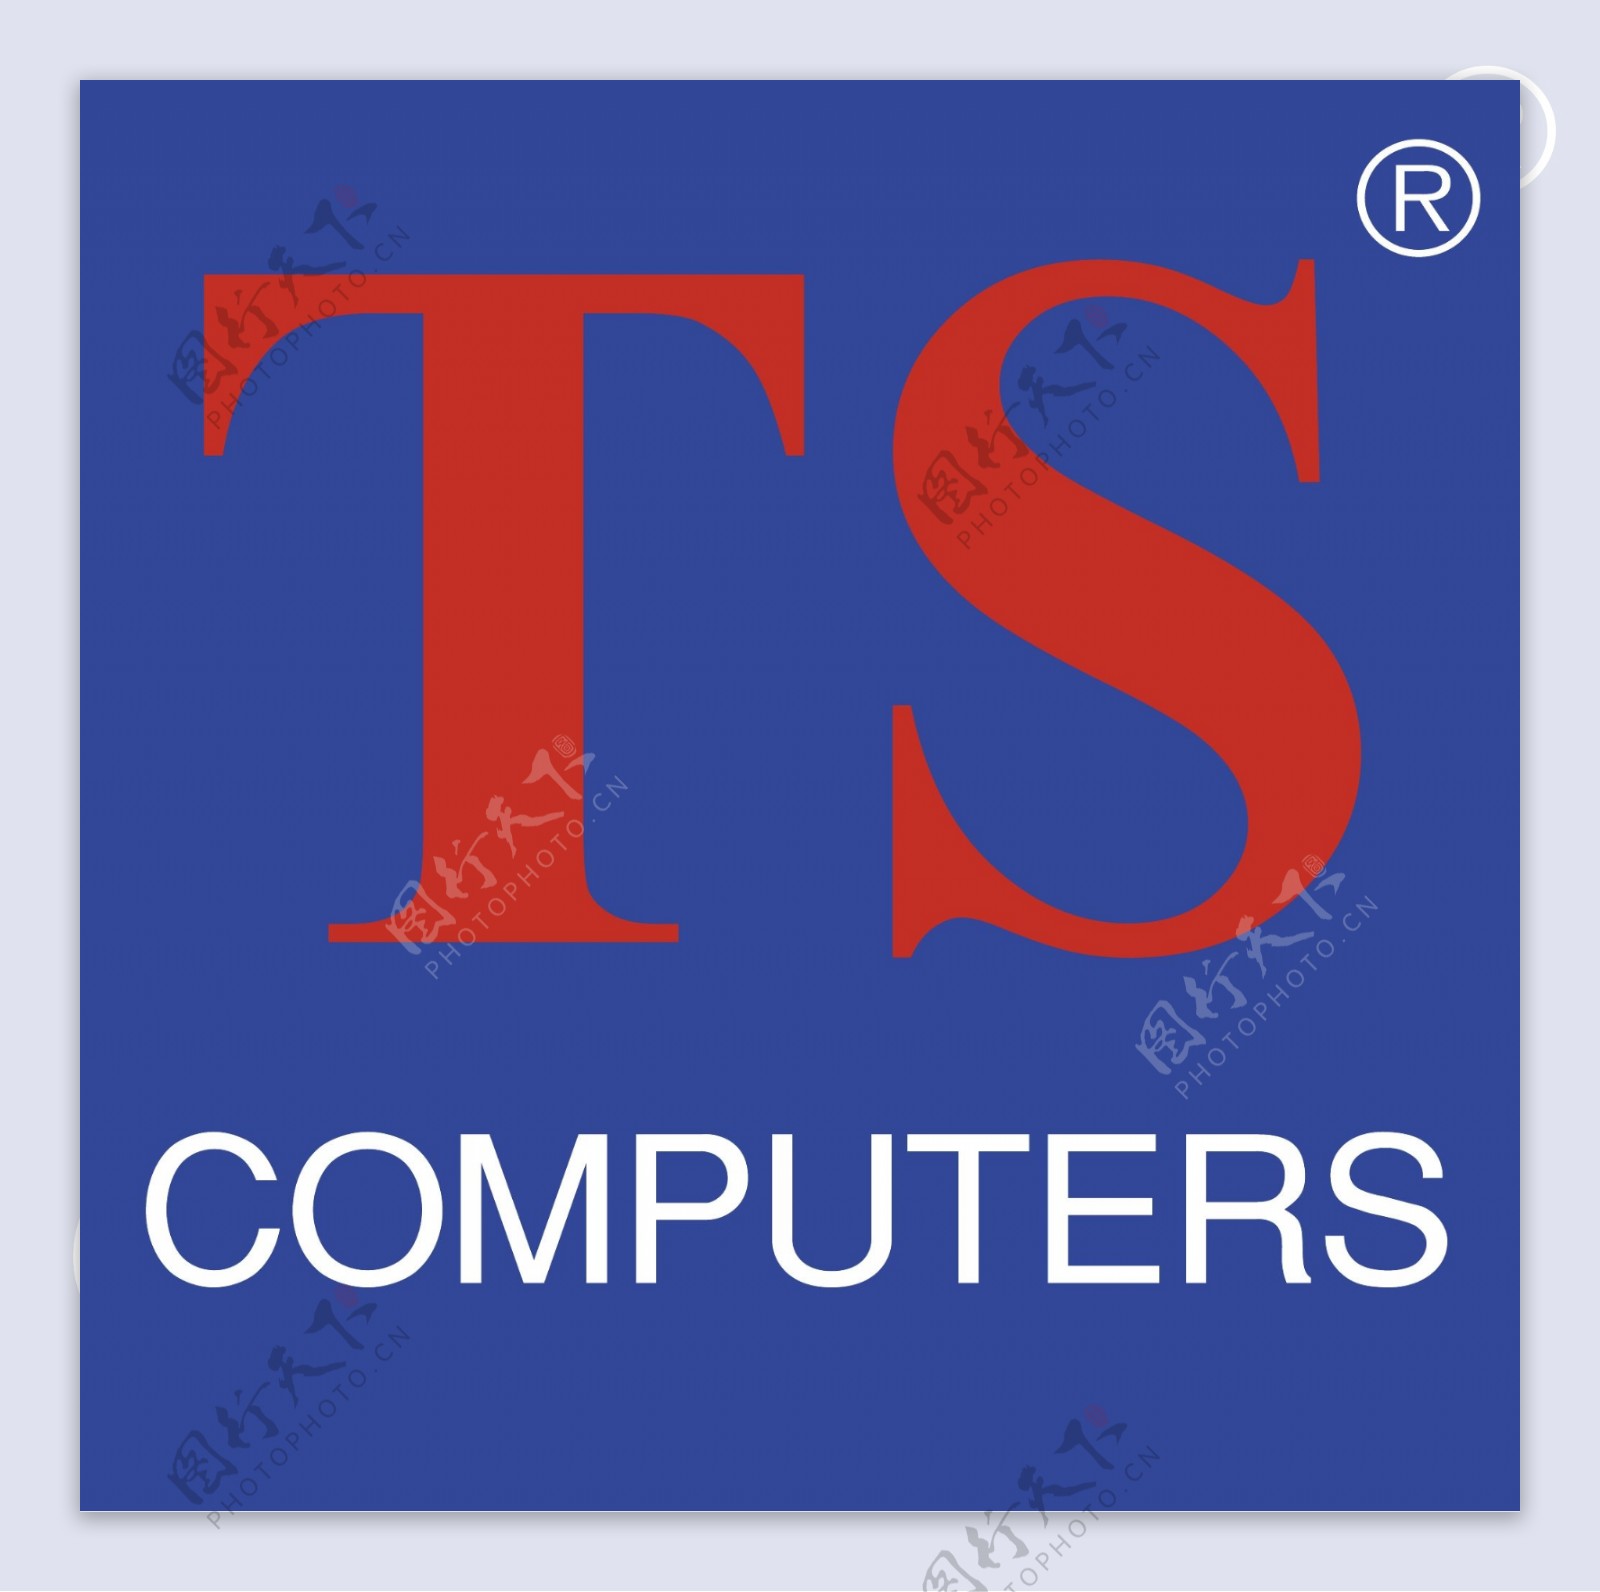 TS电脑标志